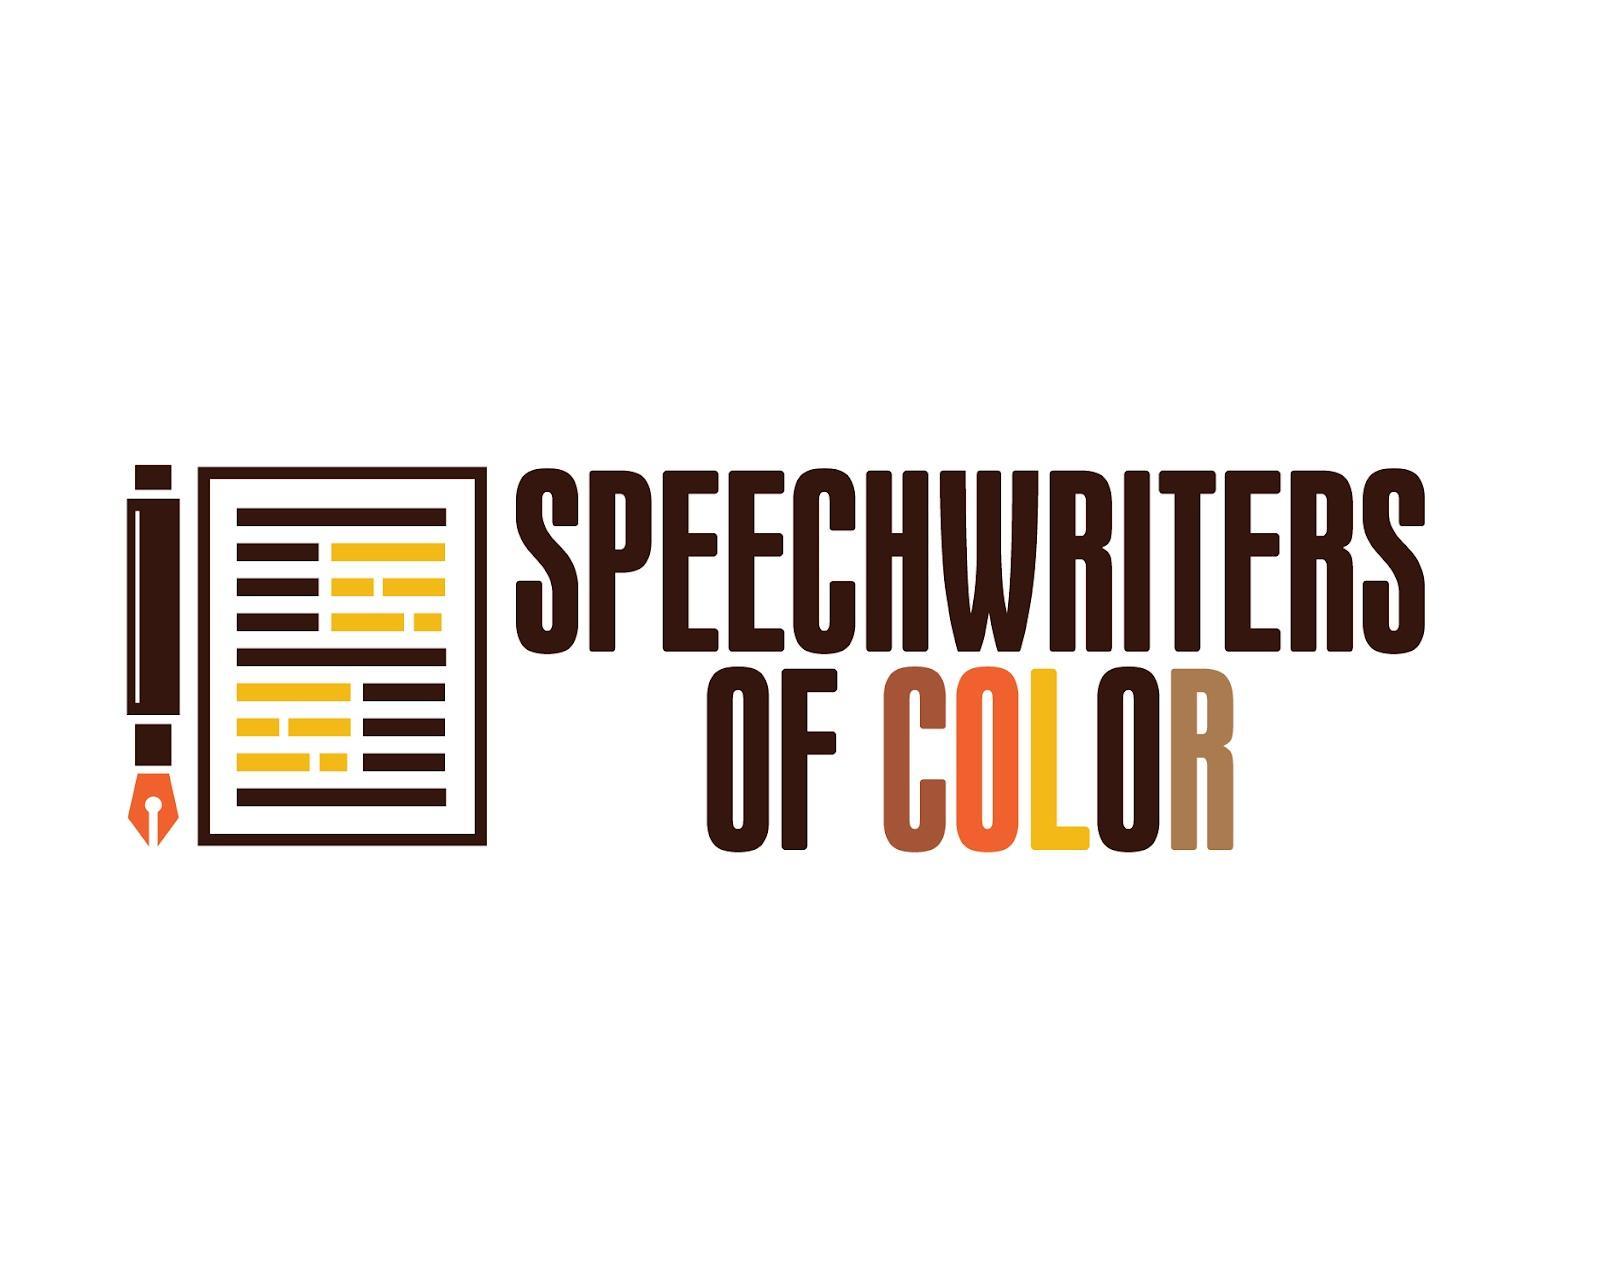 Speechwriters of Color